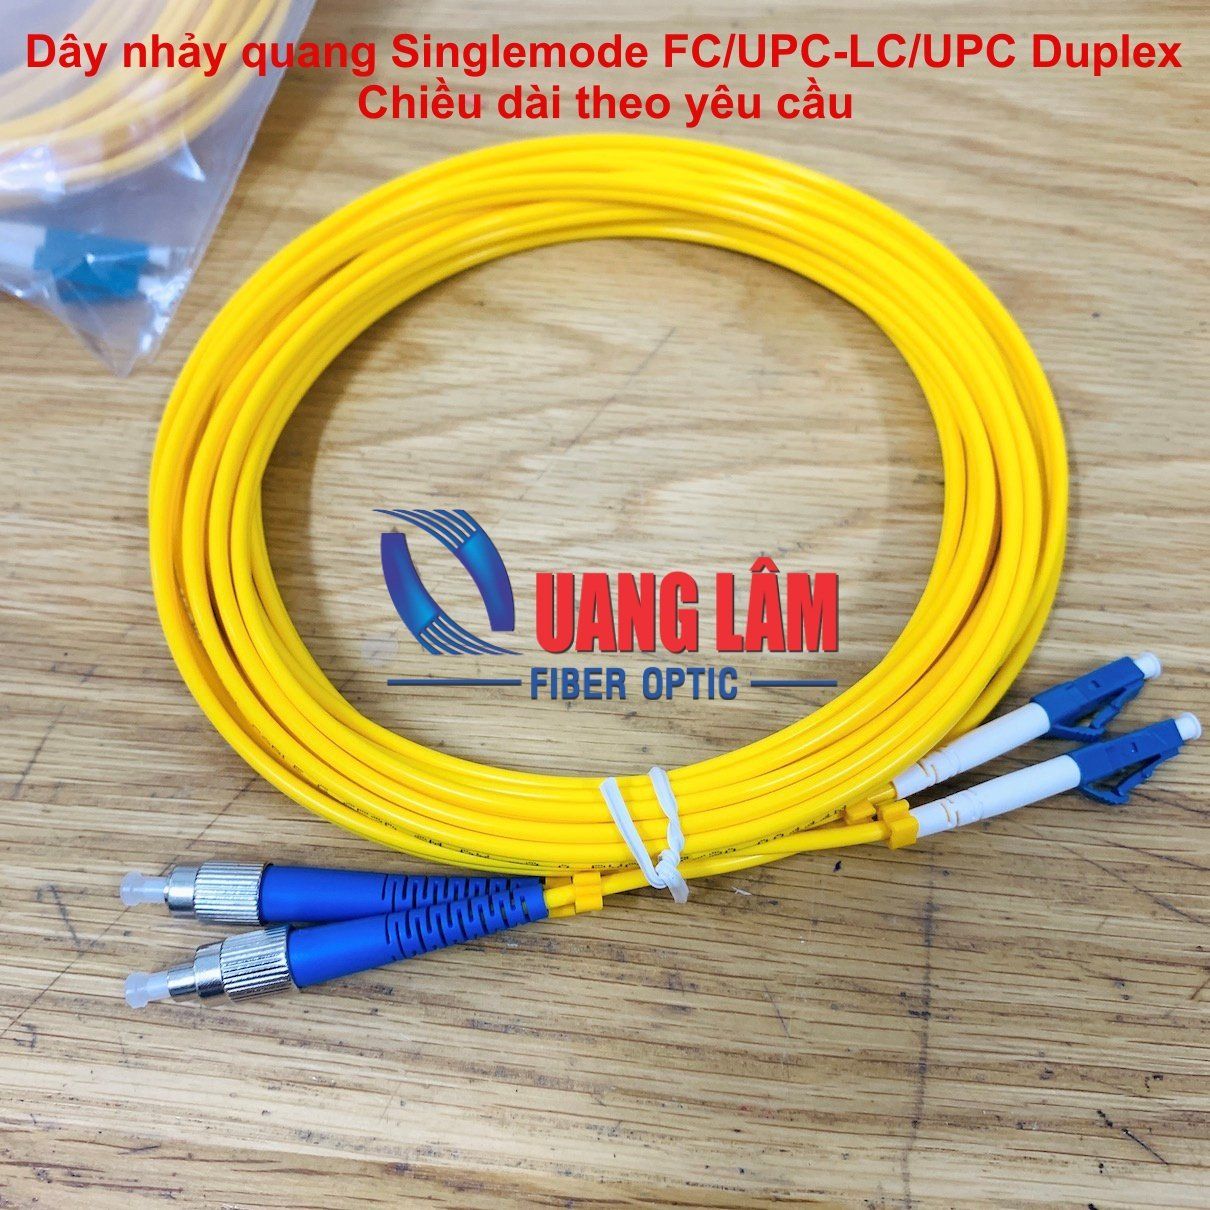 Dây nhảy quang Singlemode FC/UPC-LC/UPC Duplex phi 3.0mm - Chiều dài theo yêu cầu